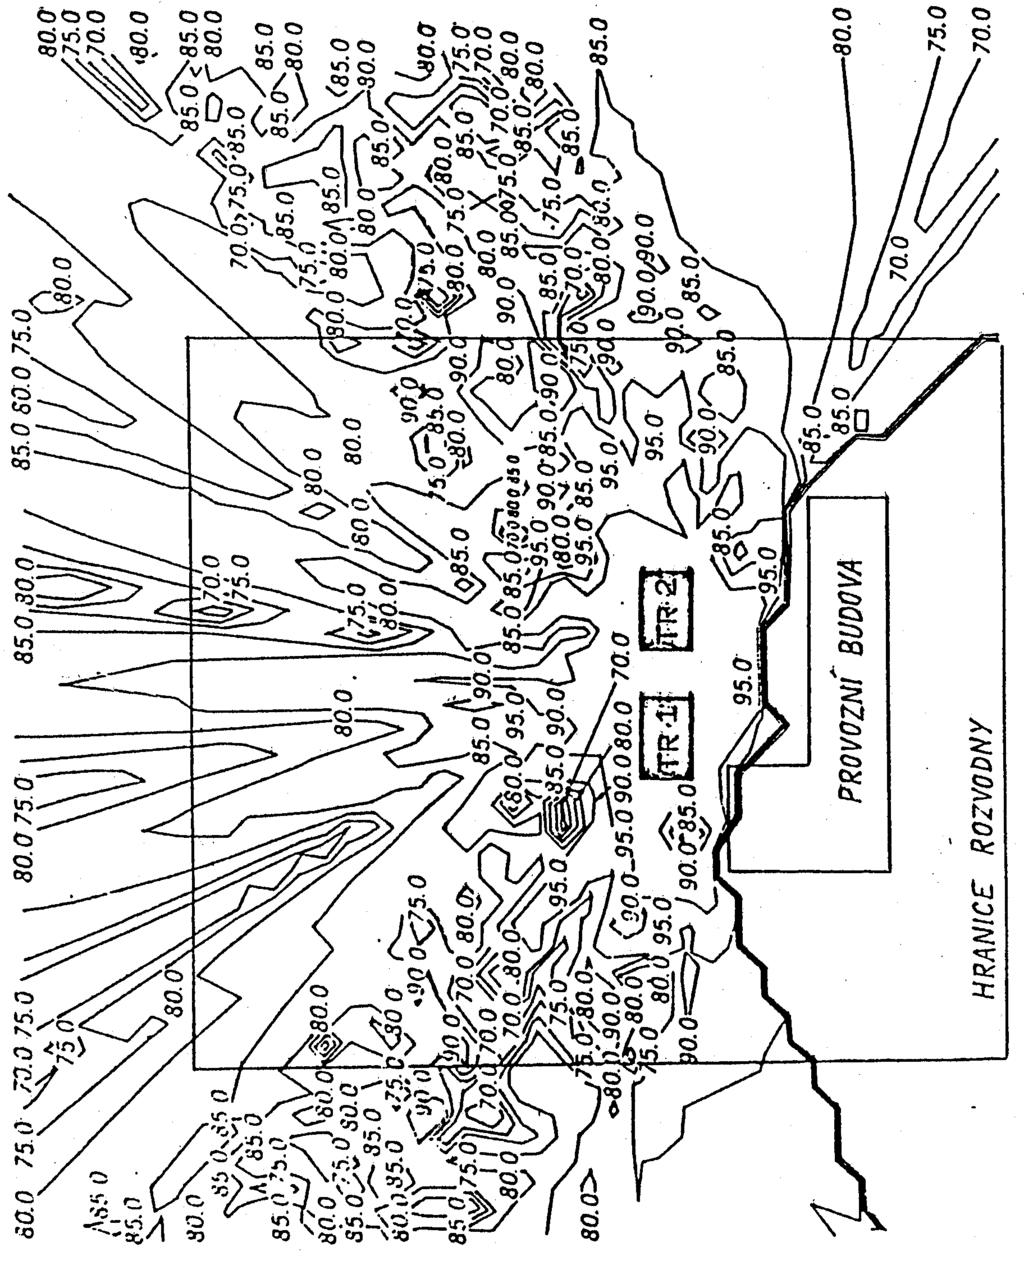 Obrázek 4 - Přesná hluková mapa transformovny se dvěma